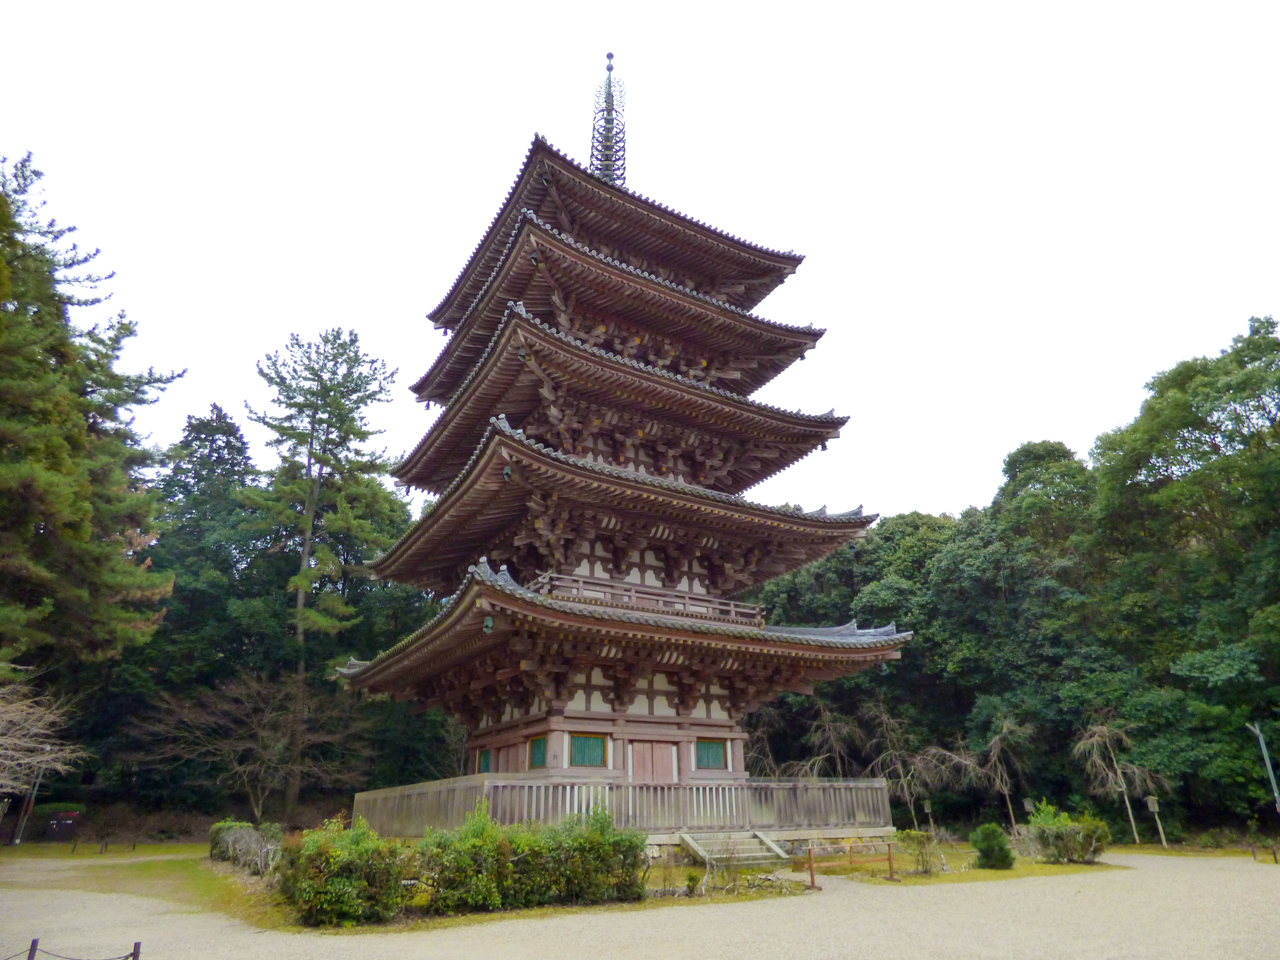 醍醐寺の五重の塔